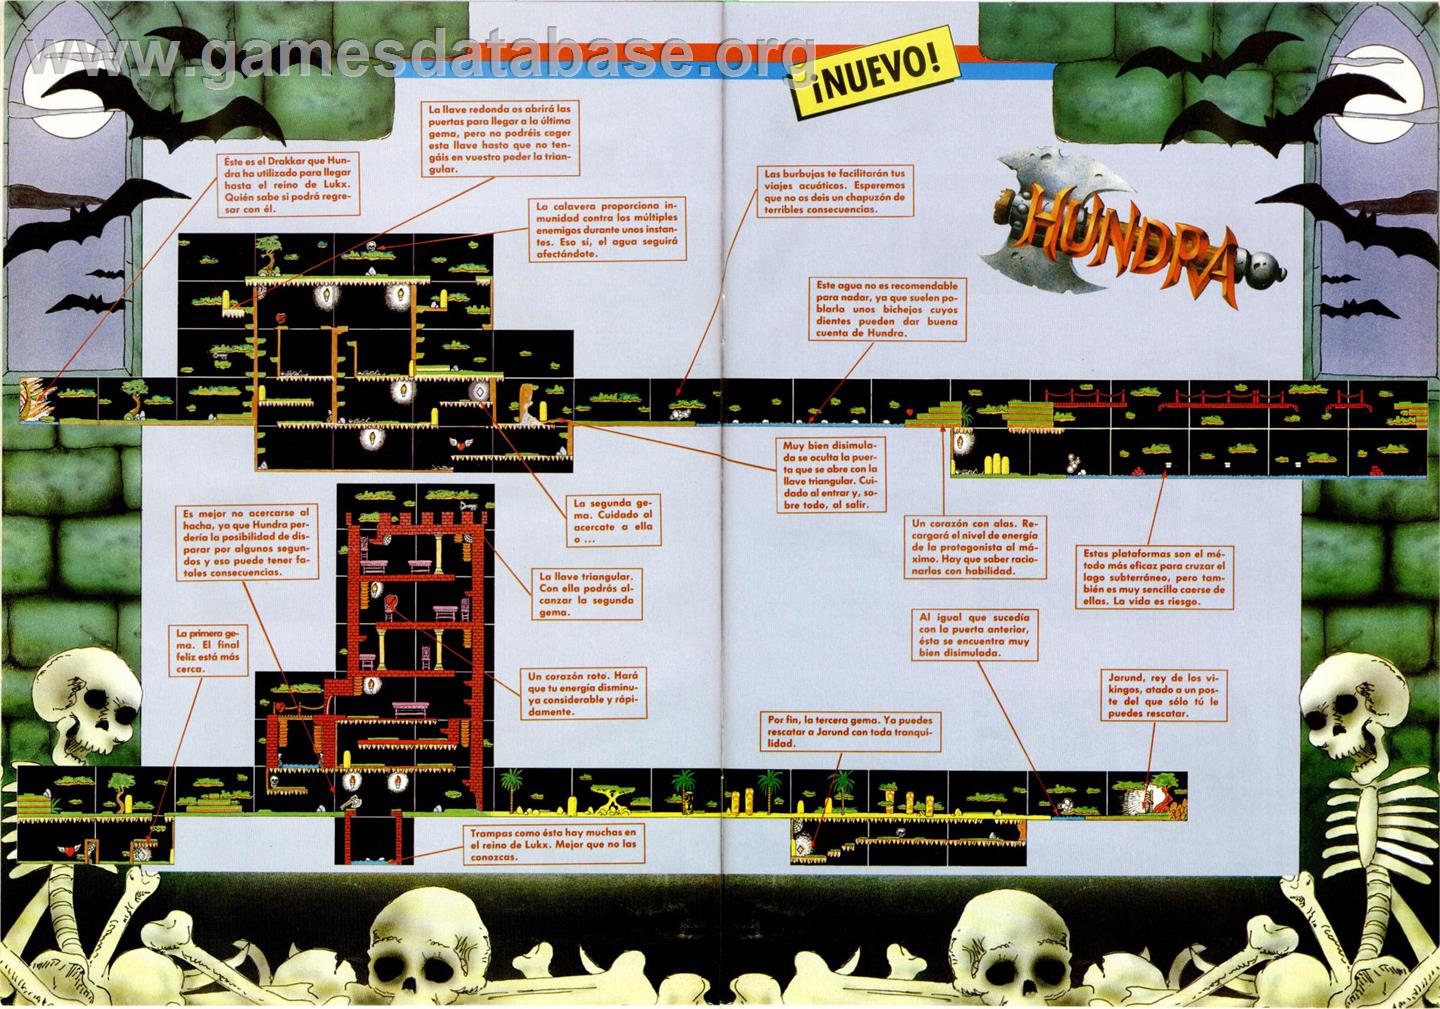 Hundra - MSX - Artwork - Map